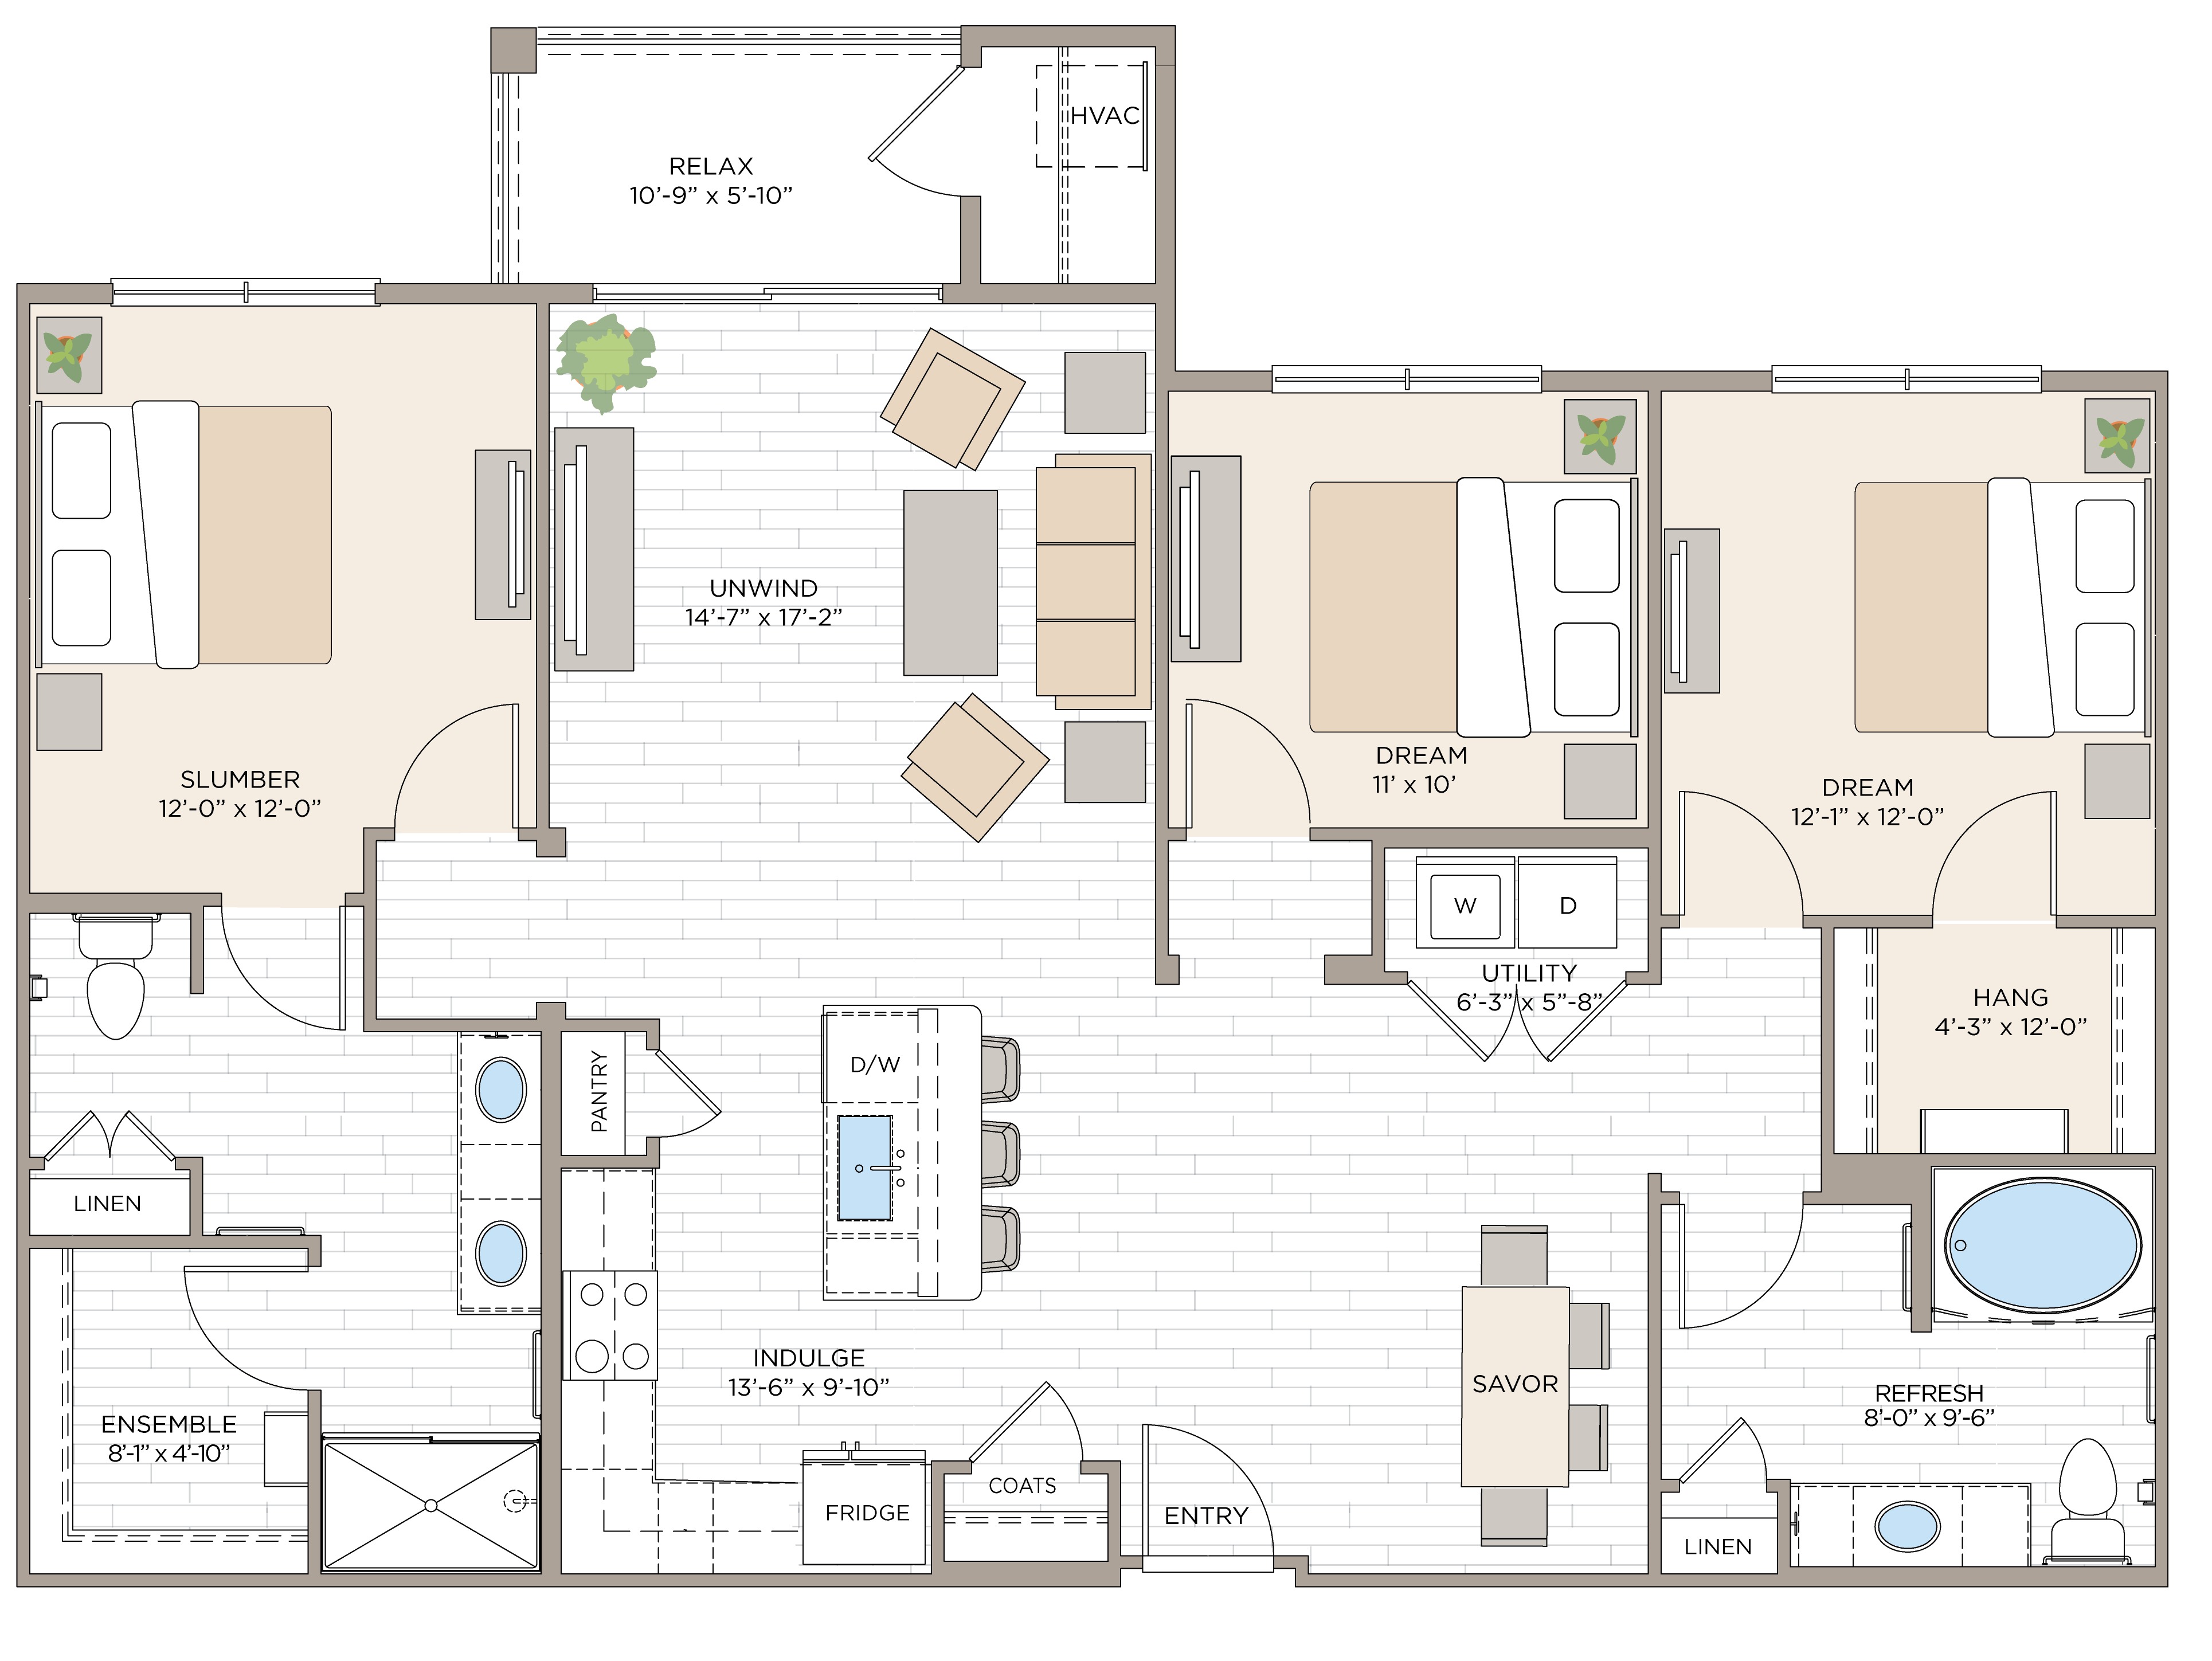 Floorplan for Apartment #08216, 3 bedroom unit at Halstead Maynard Crossing